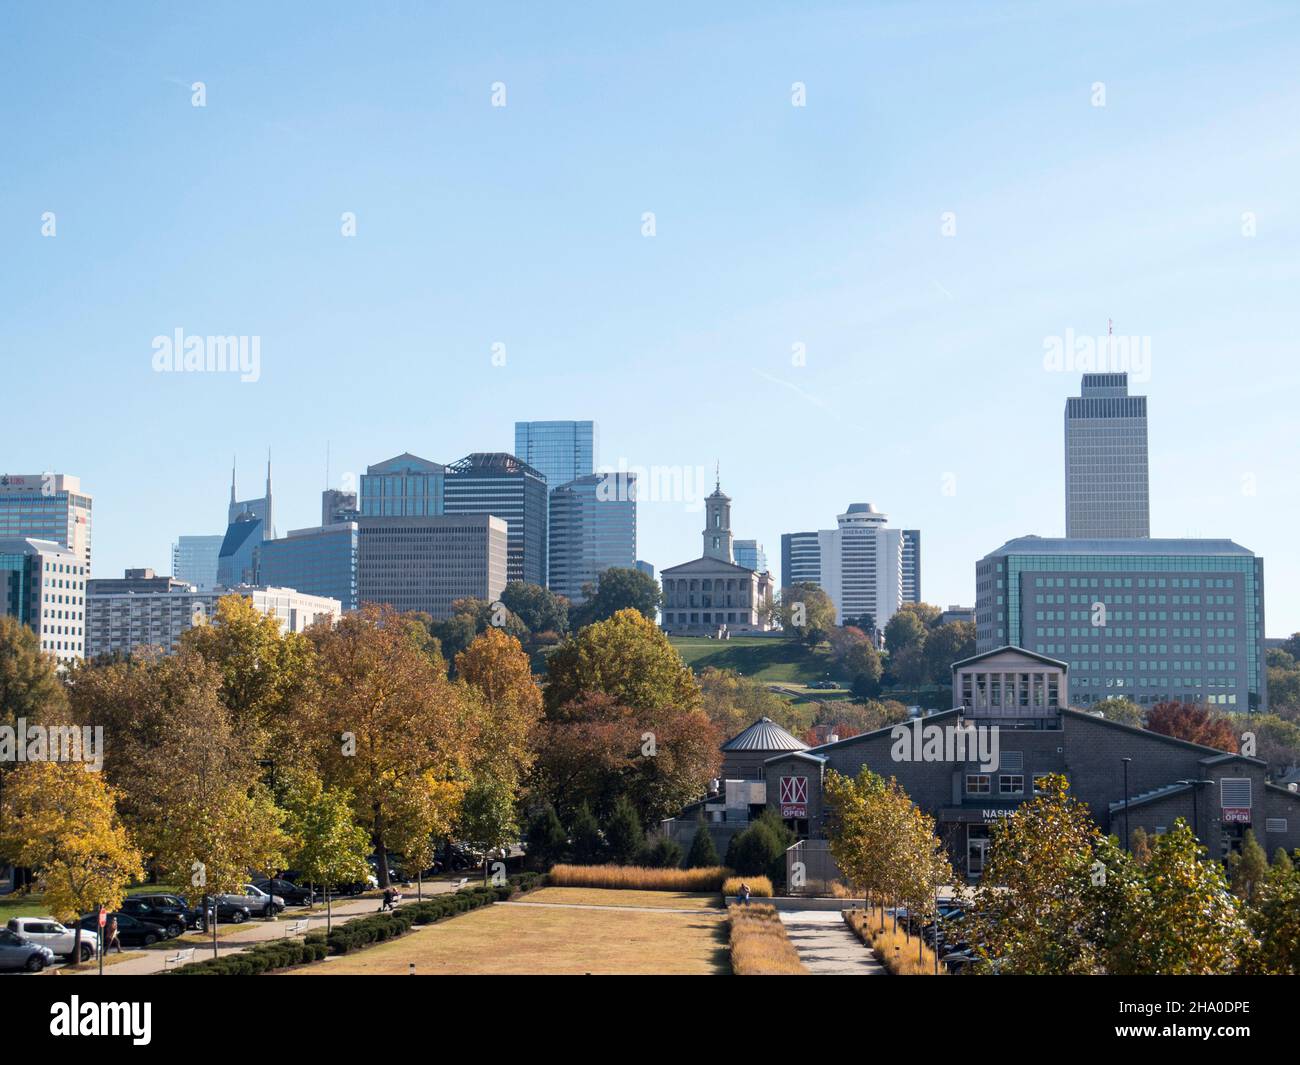 Nashville Tennessee skyline Stock Photo